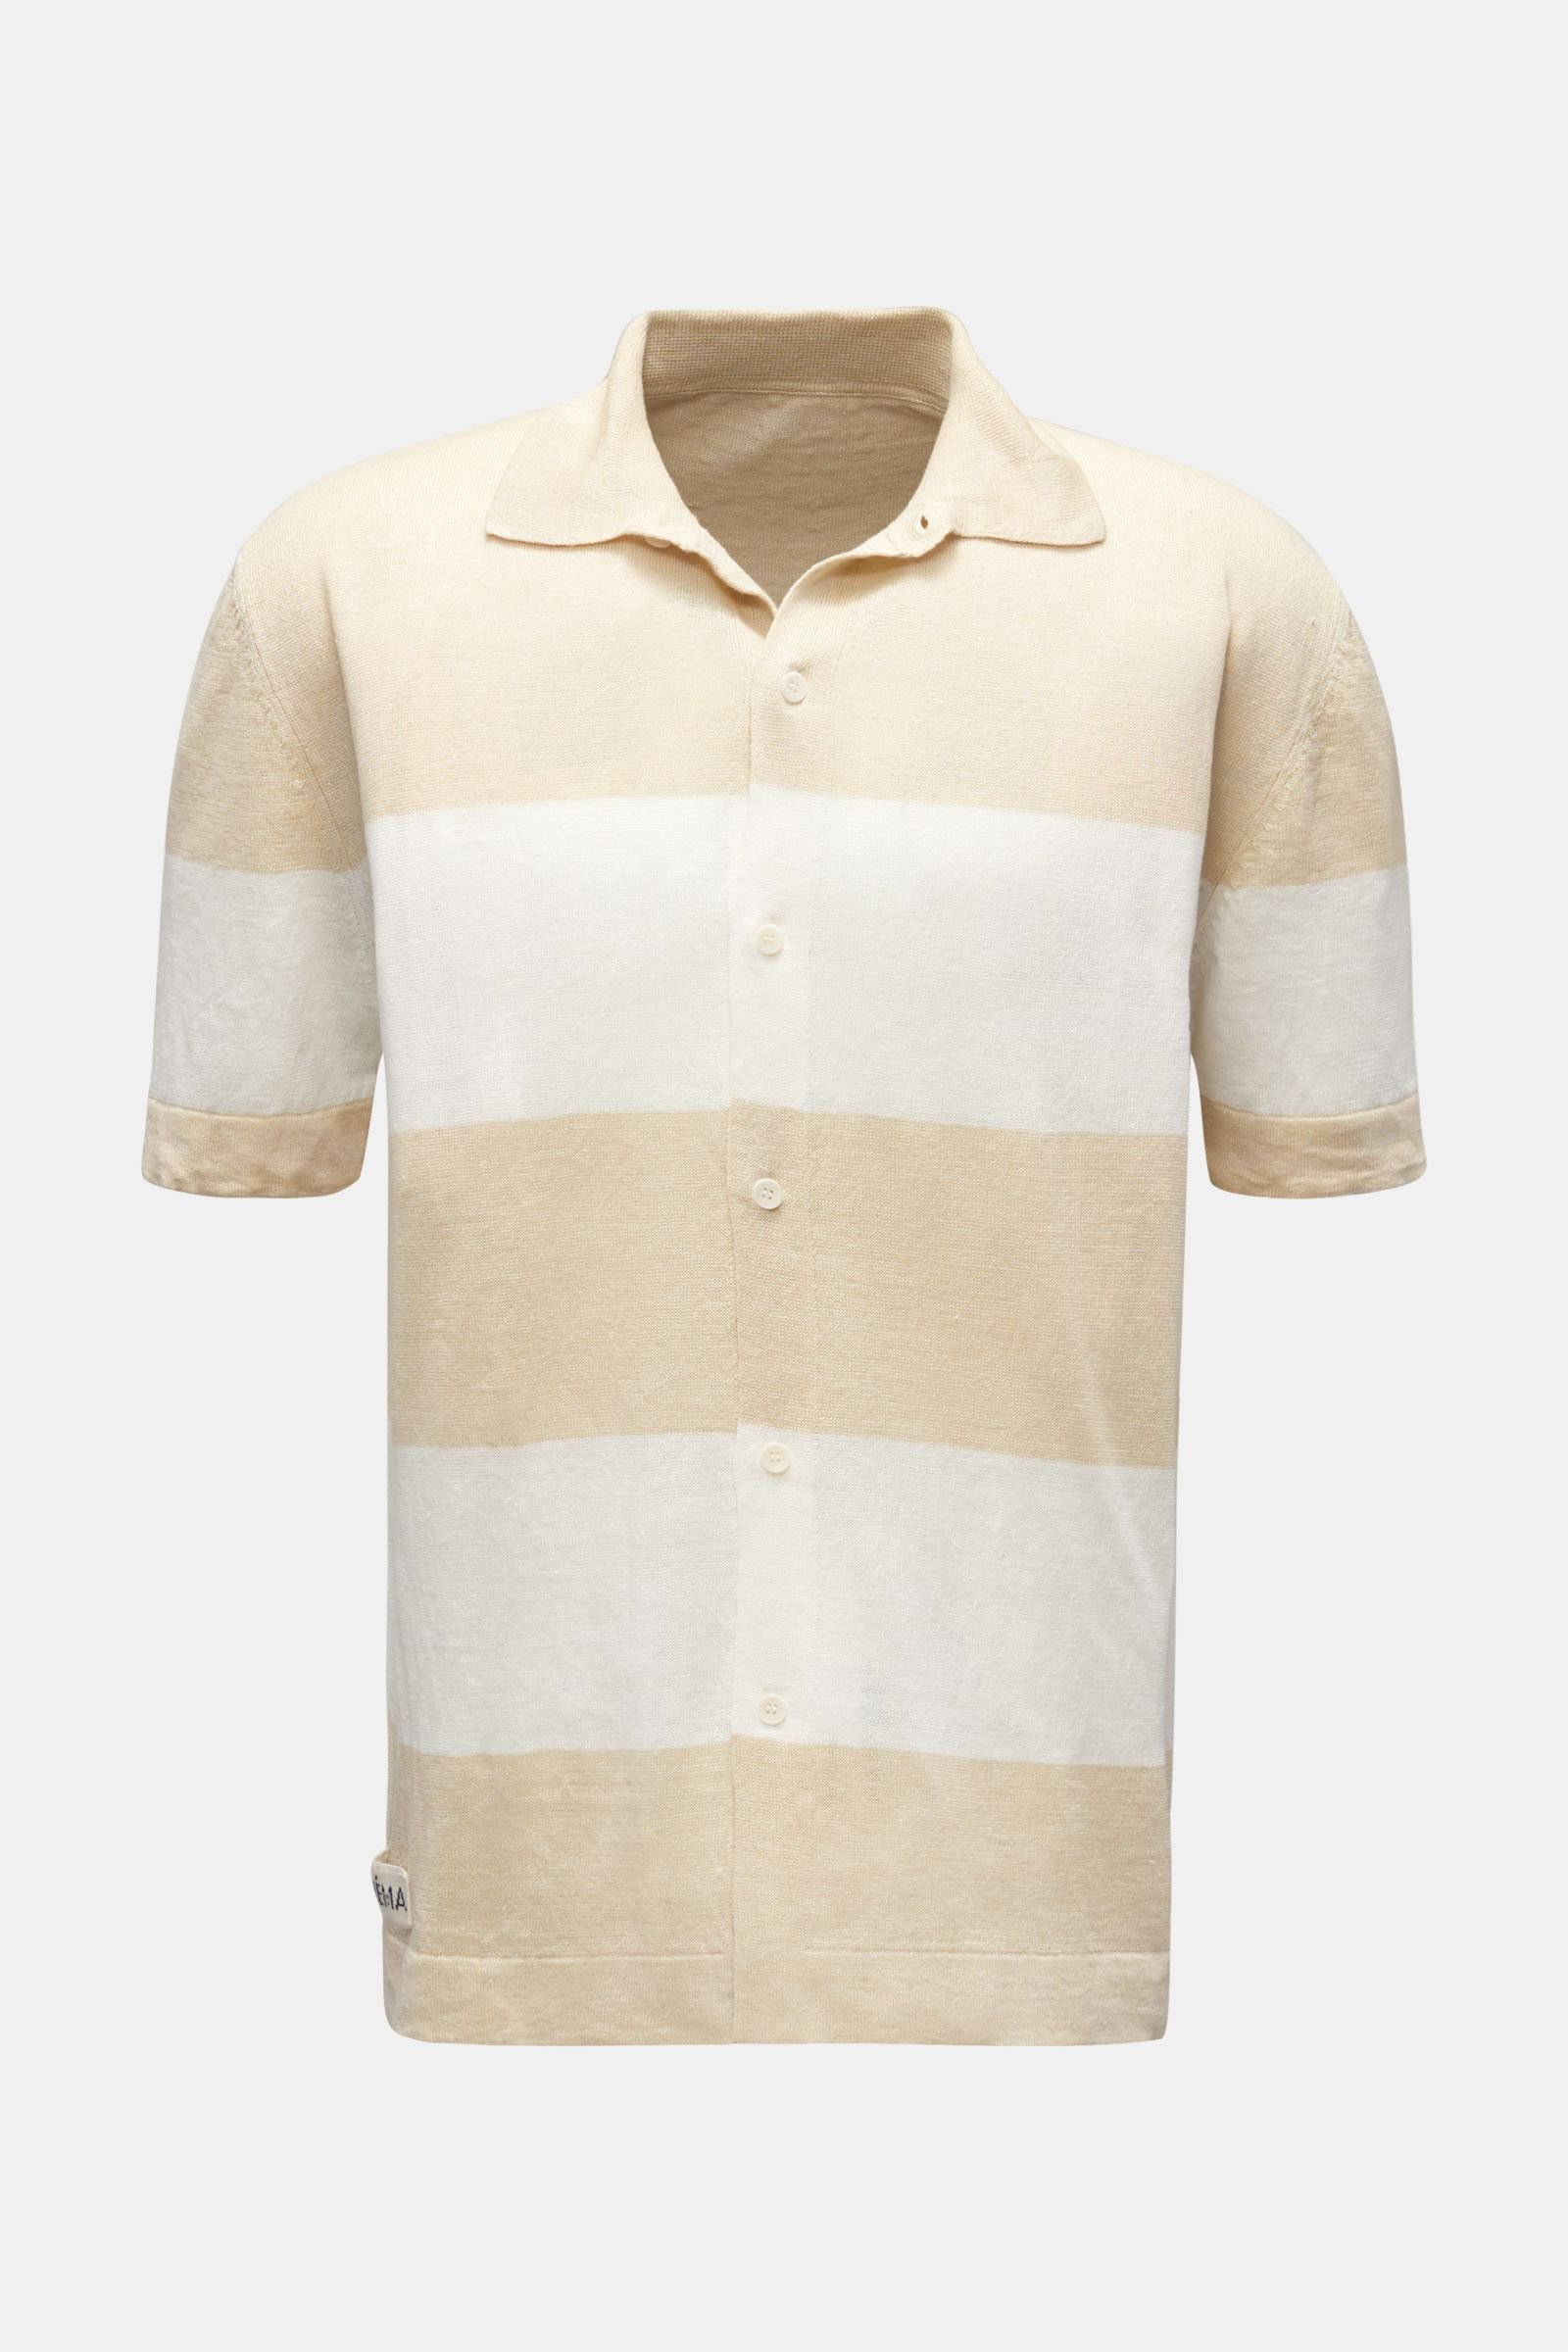 Linen short sleeve knit shirt narrow collar beige/white striped